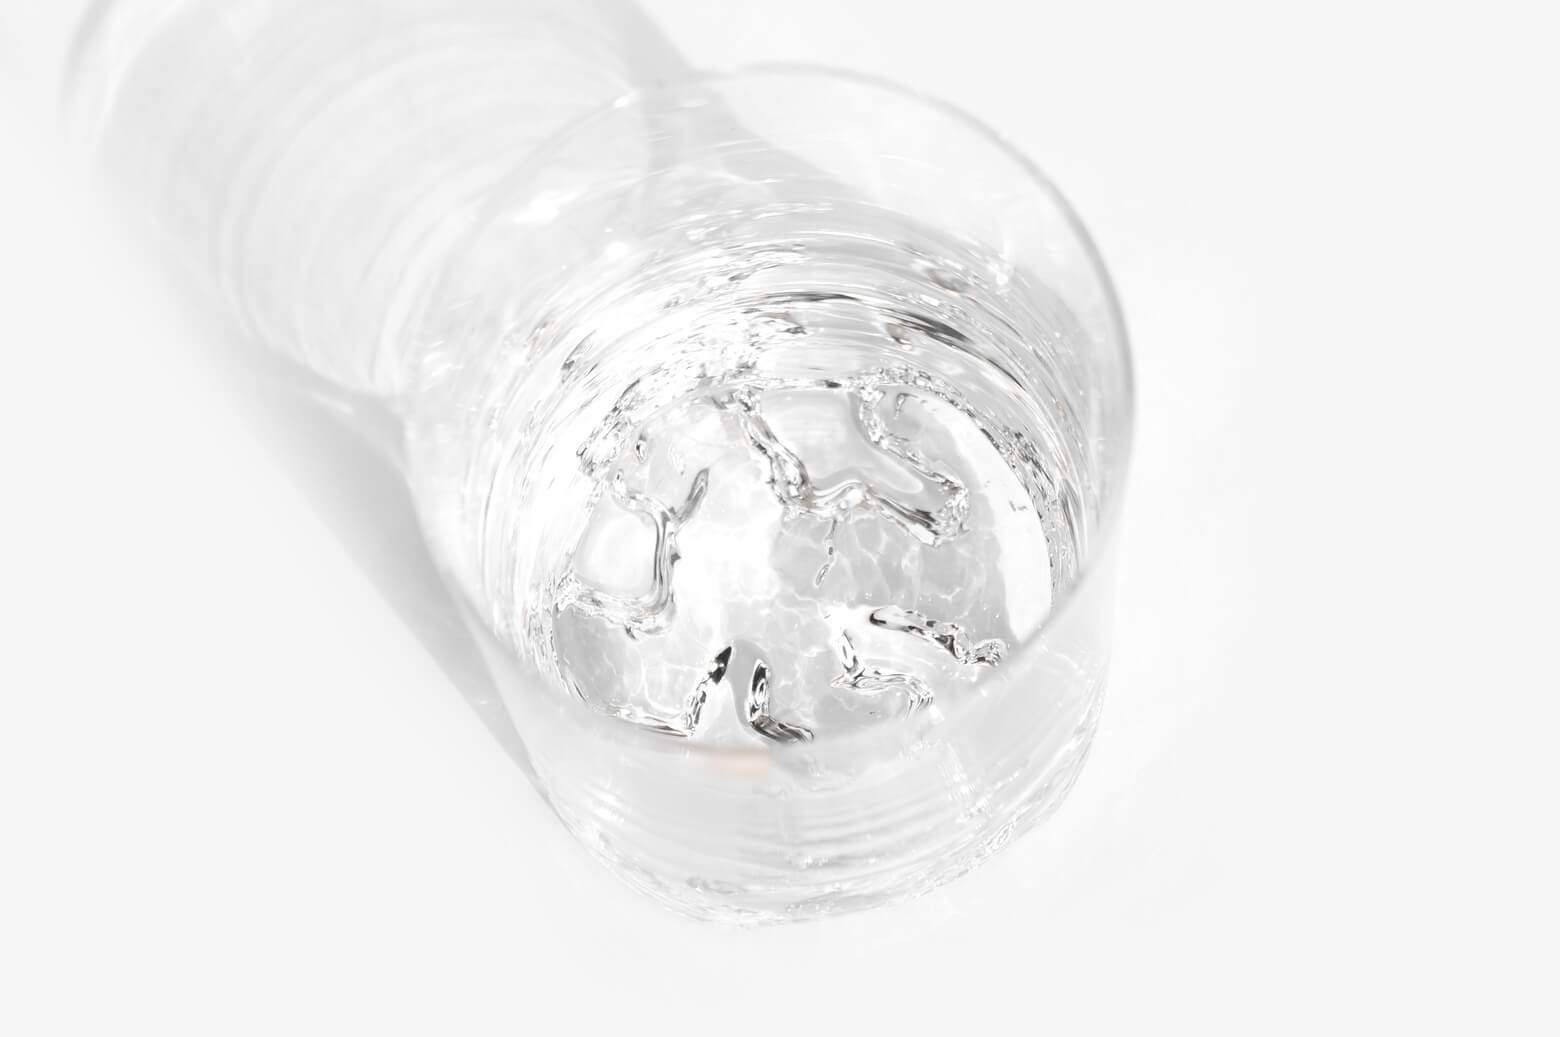 iittala Rock glass Gaissa S size Tapio Wirkkala/イッタラ ロックグラス ガイサ Sサイズ タピオ・ウィルカラ 北欧食器 ガラス 4